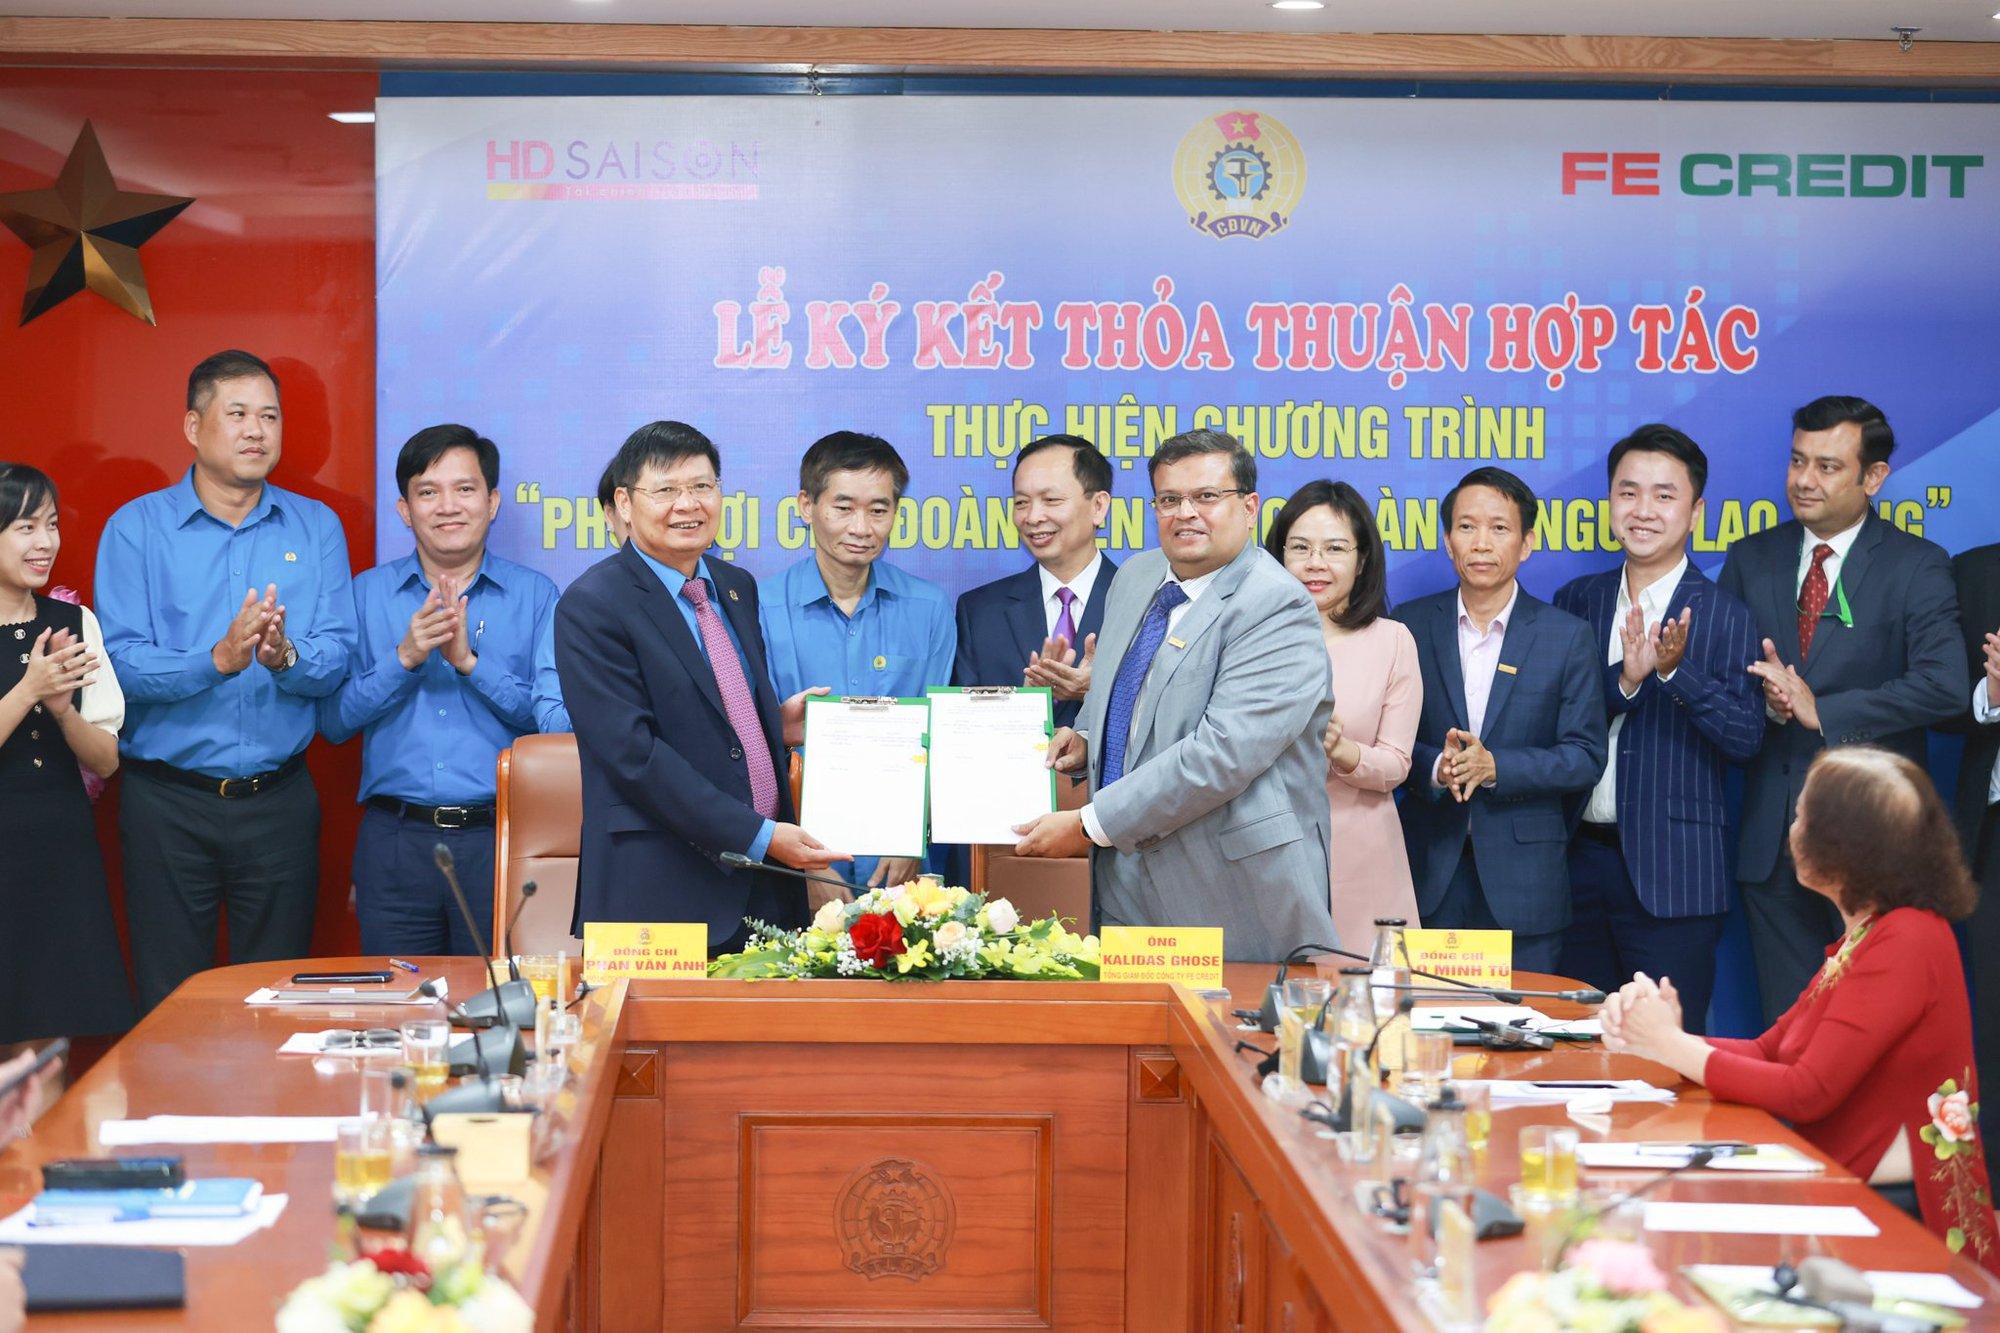 FE CREDIT ký kết thỏa thuận hợp tác cùng Tổng Liên đoàn Lao động Việt Nam - Ảnh 3.